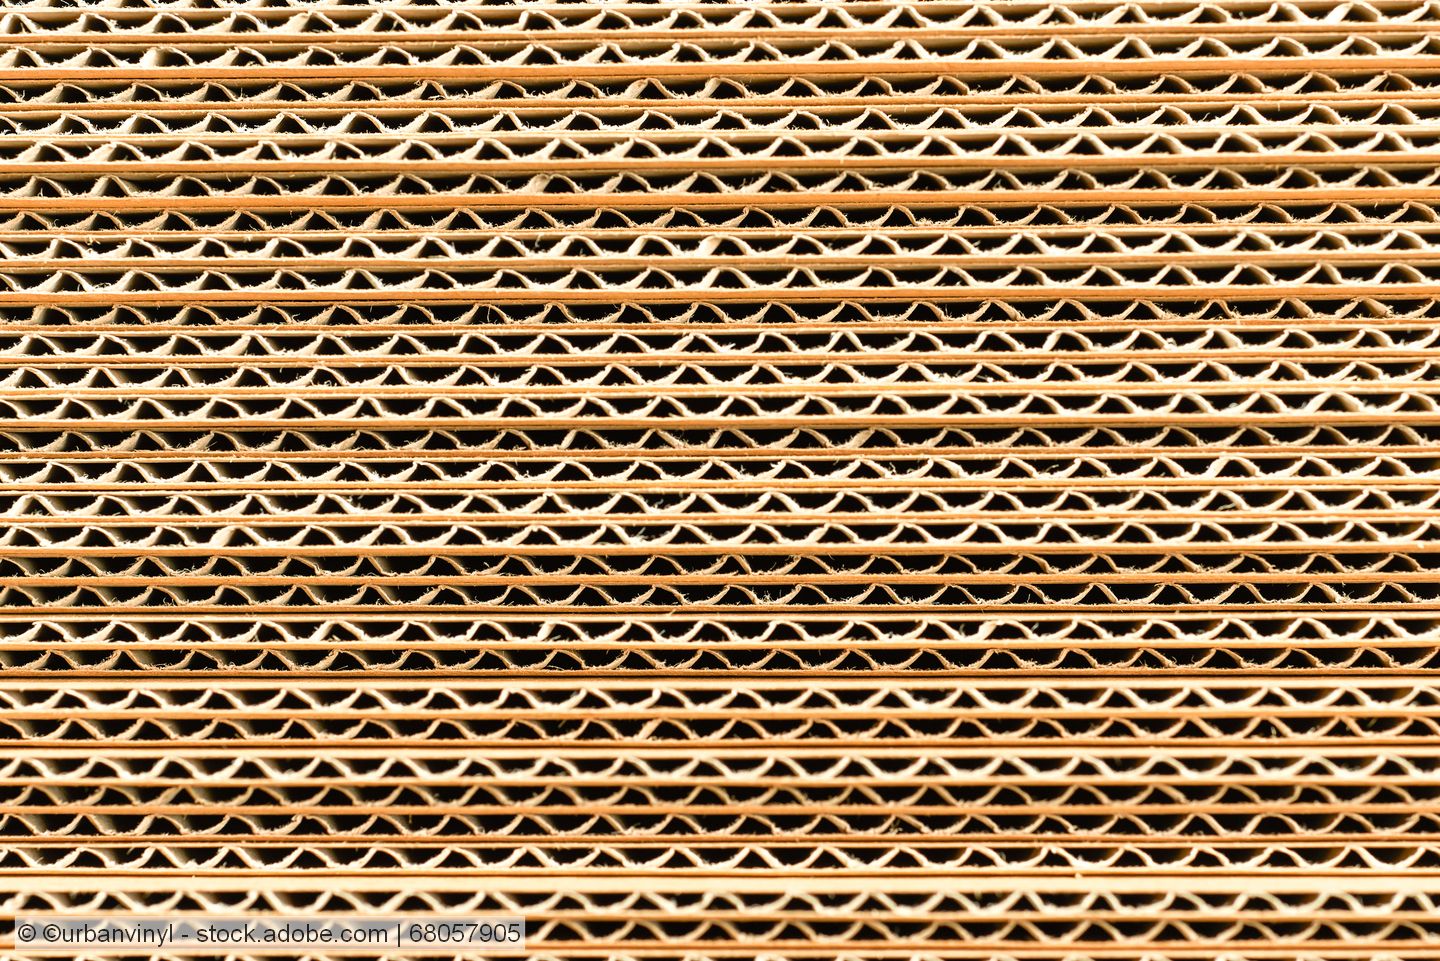 Corrugated board